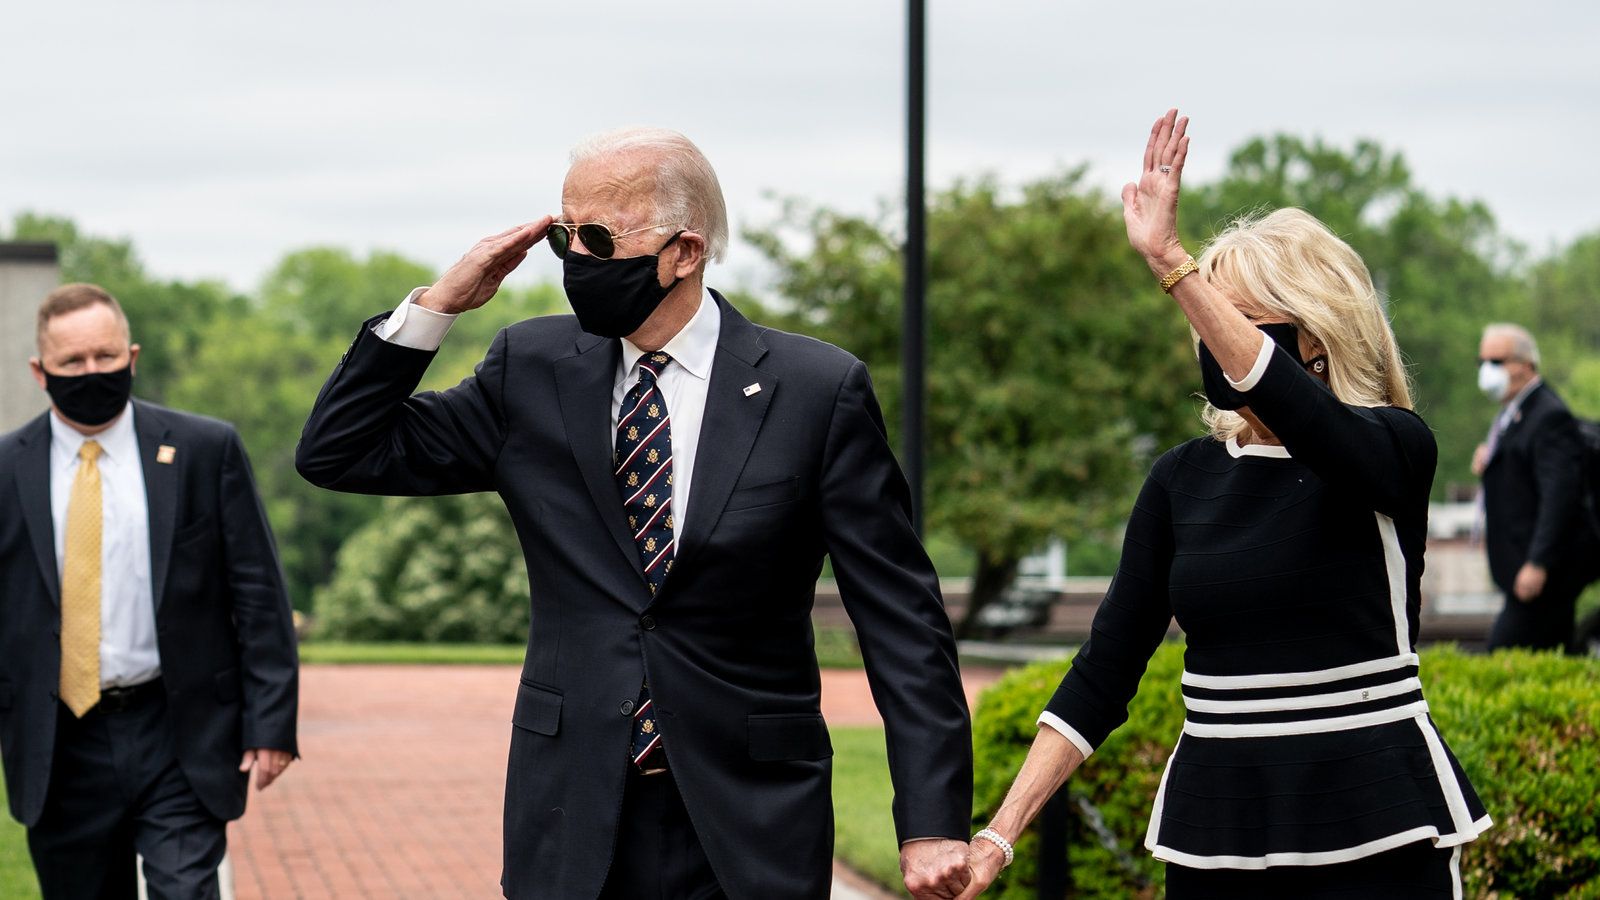 Joe Biden, Wearing Mask, Appears in Public at a Veterans Memorial